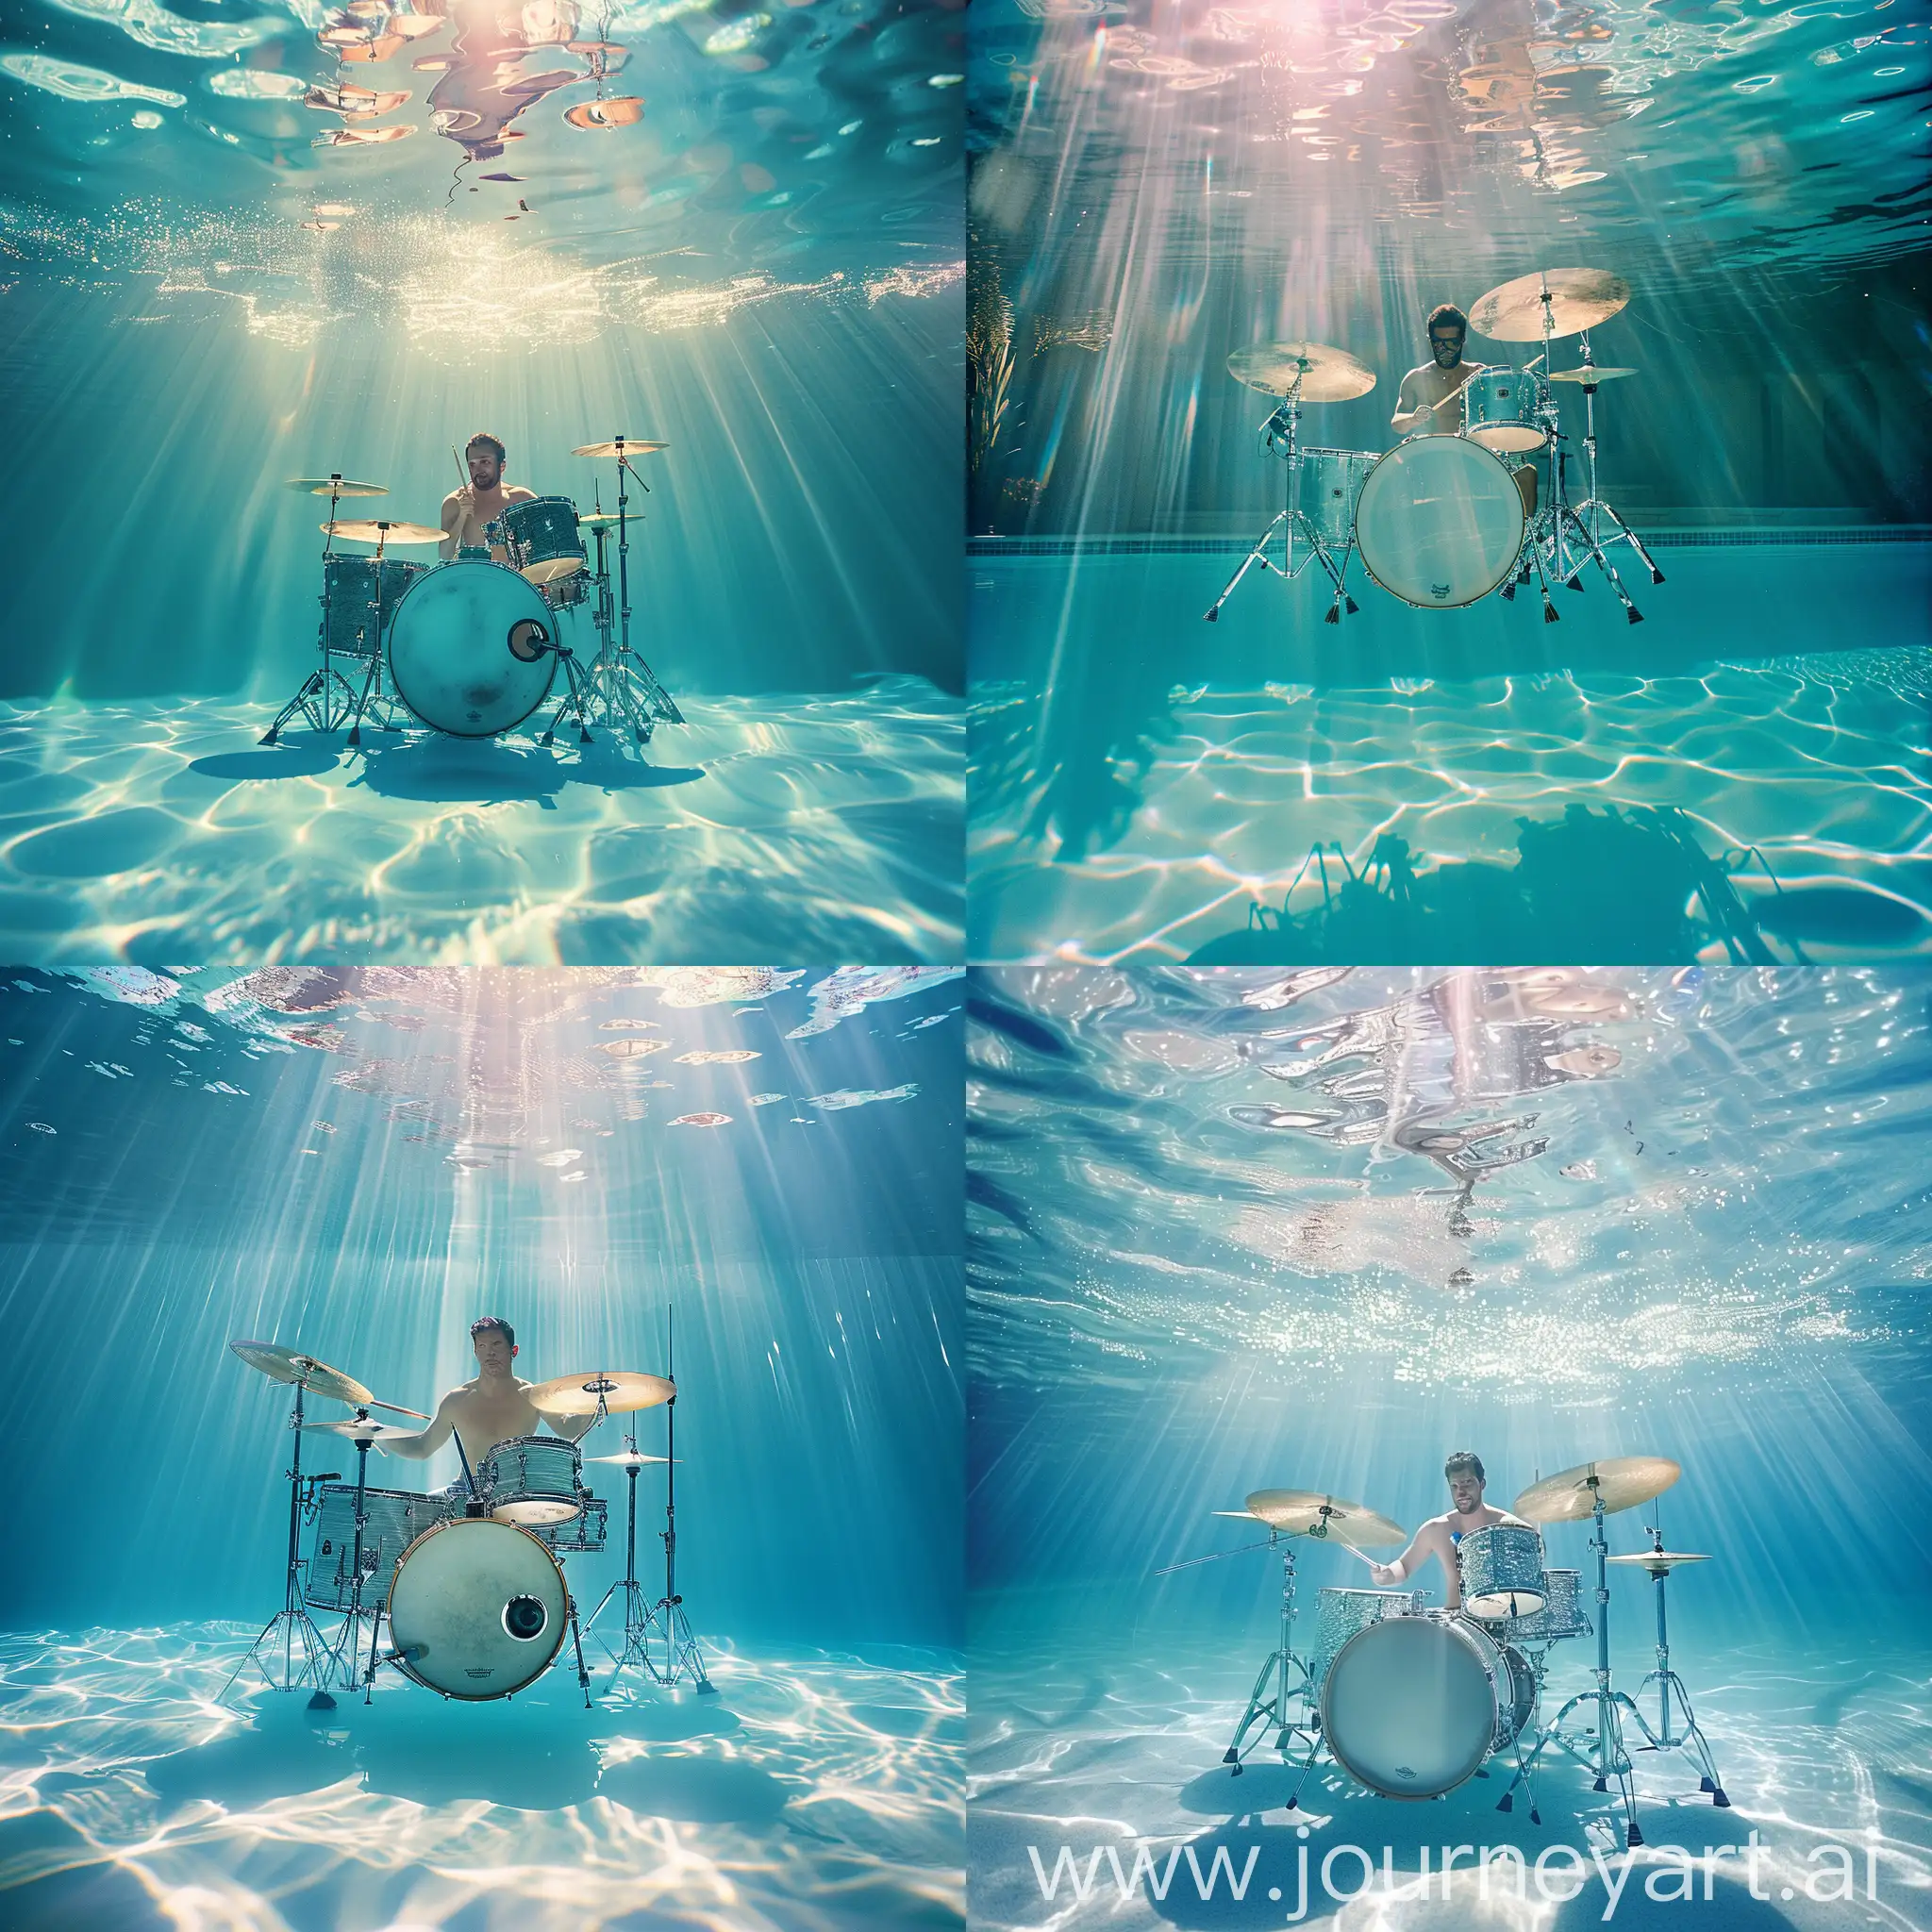 Drummer-Floating-in-Sunlit-Pool